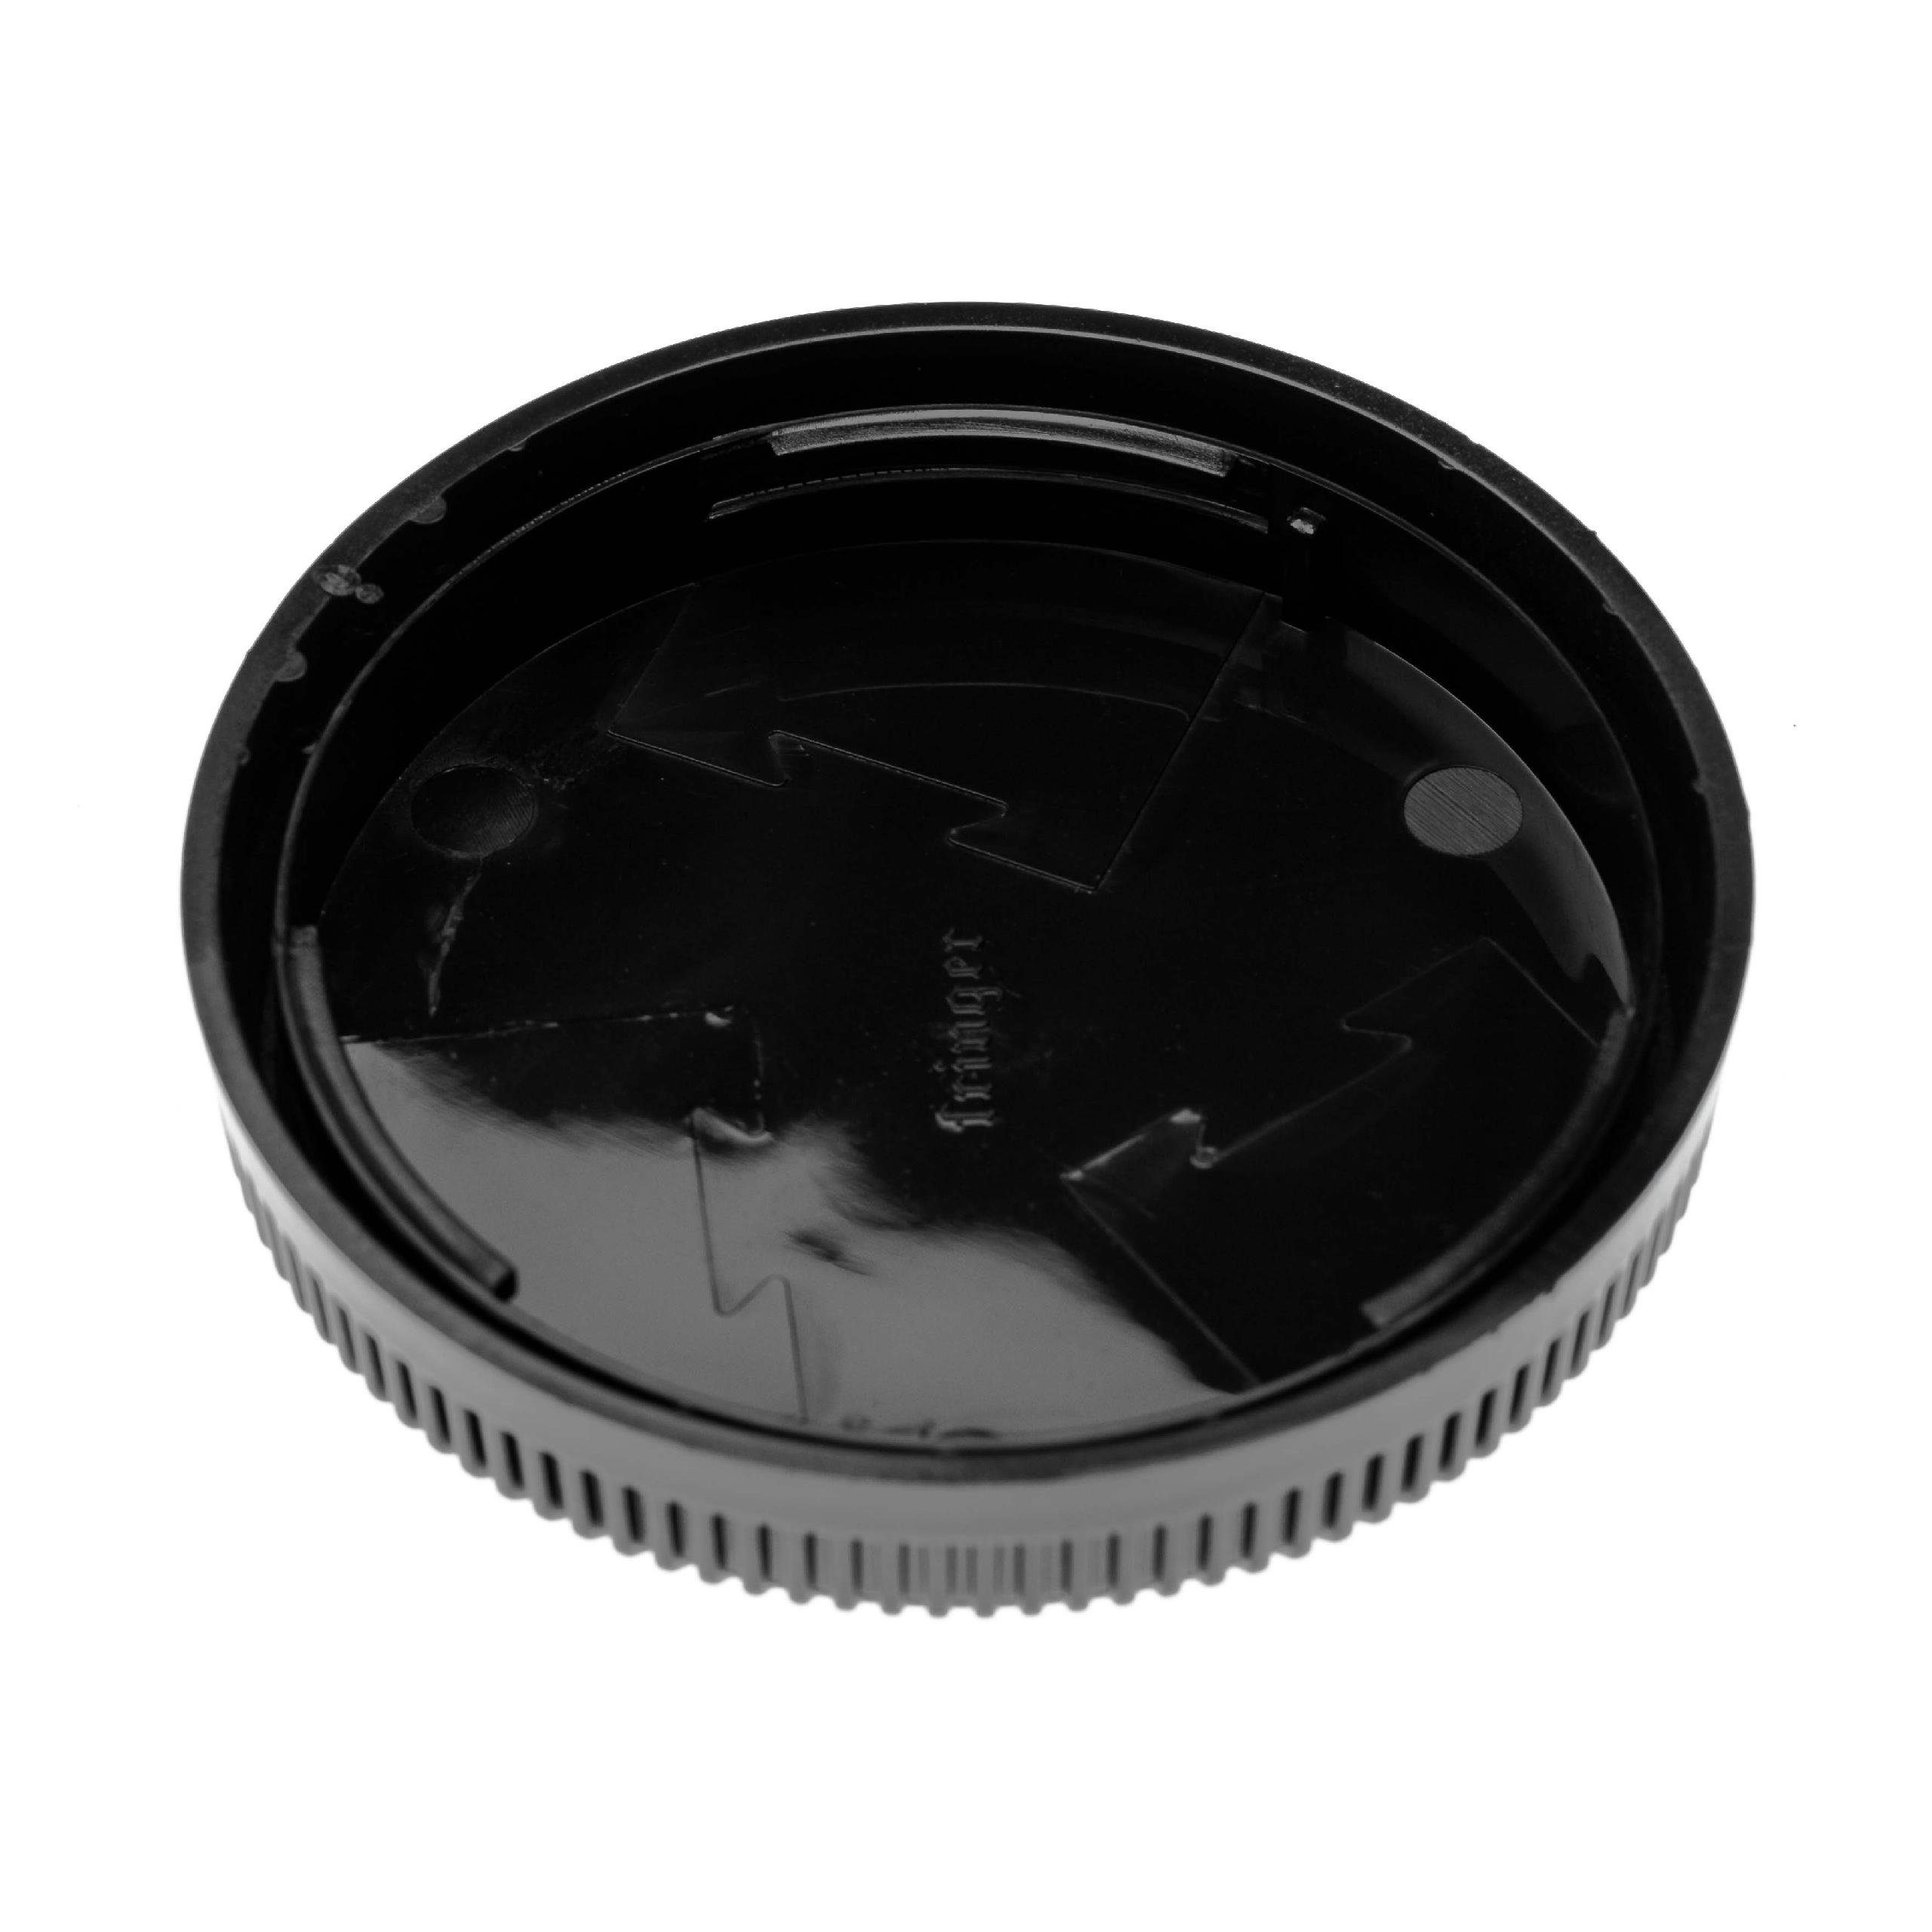 vhbw Objektivrückdeckel Ersatz für Fuji / Fujifilm RLCP-002 für Kamera